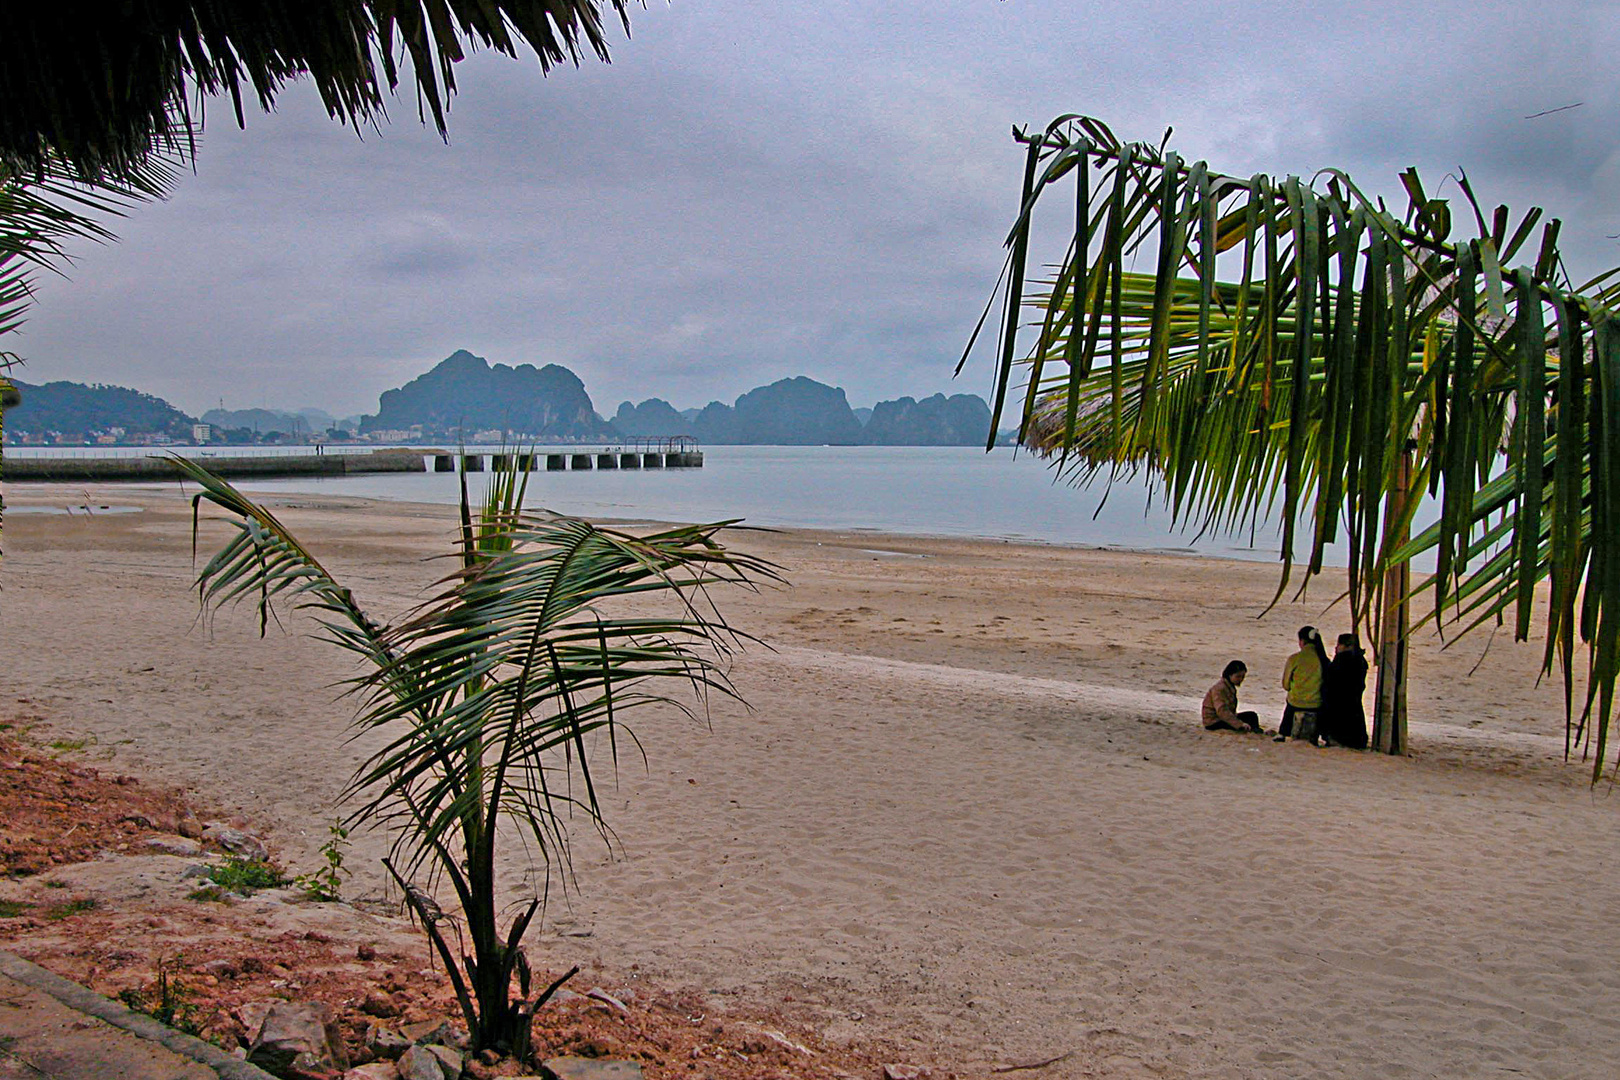 Bai Chay beach at Ha Long Bay